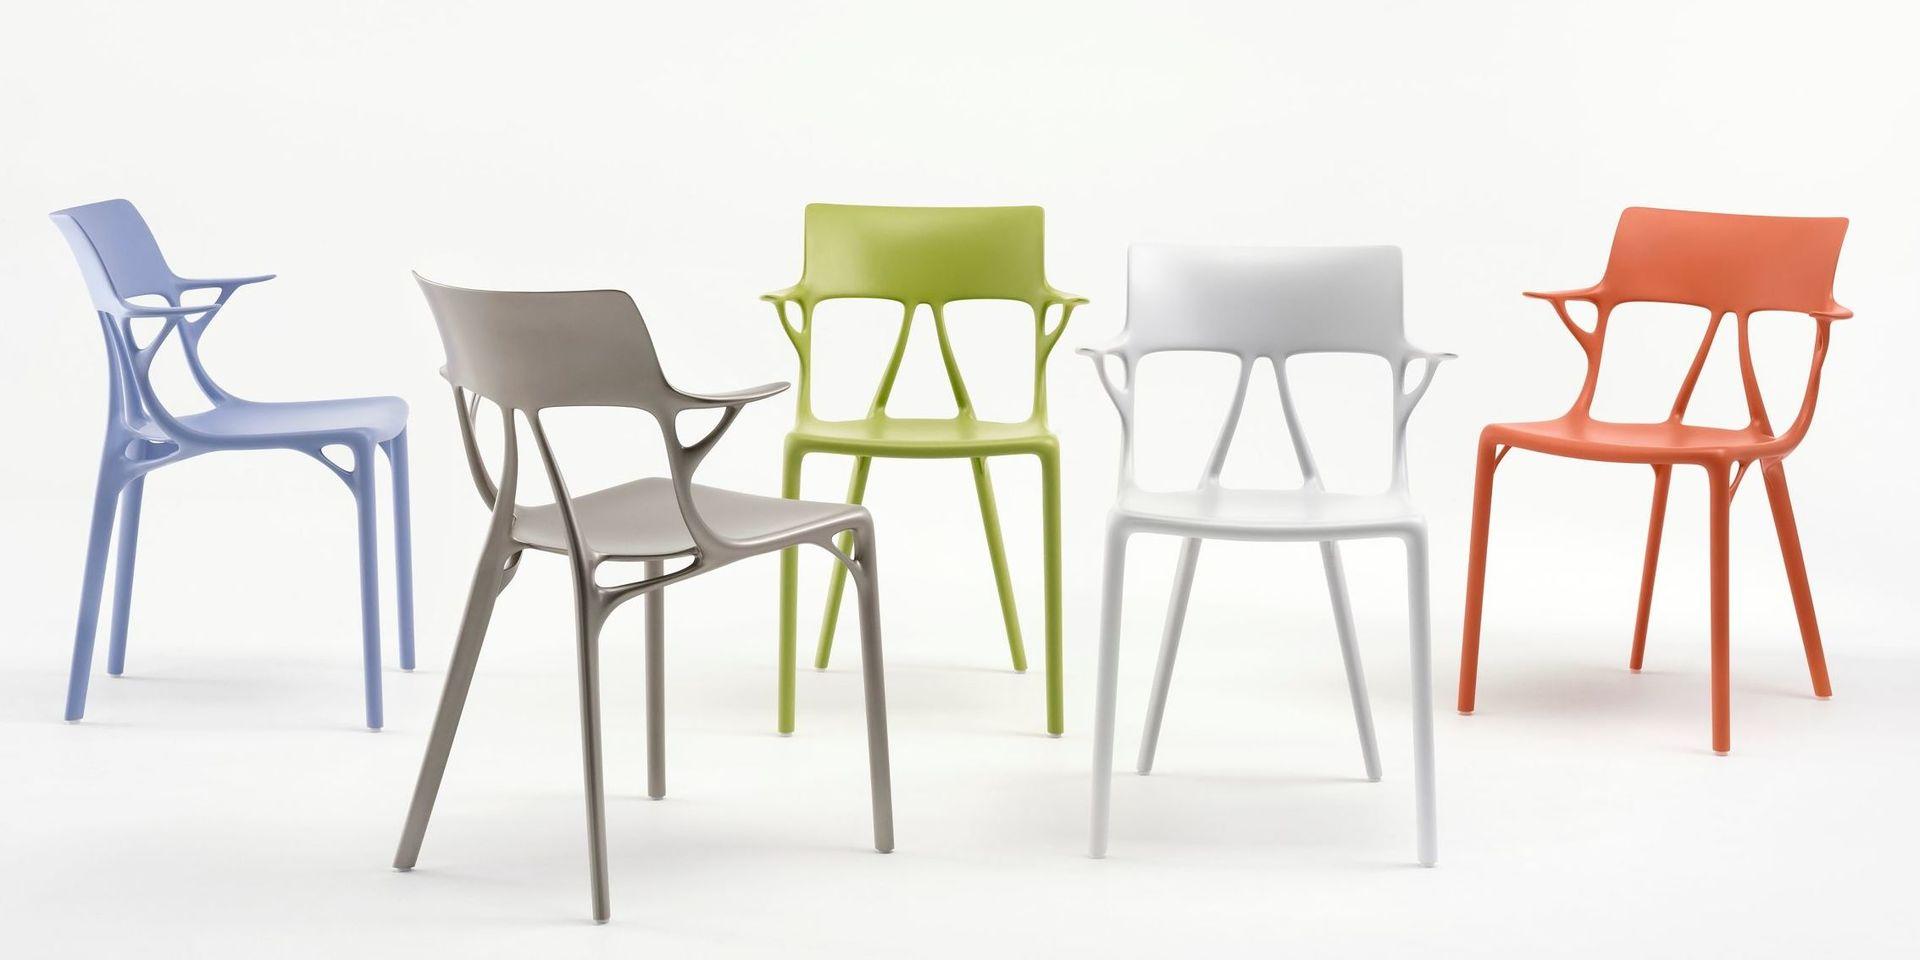 Intelligenta stolar. Philippe Starck har formgett allt från snirkliga rokokostolar i plast till världens mest exklusiva lyxyachter. Nu har han skapat världens första stol som bygger på AI-teknik.